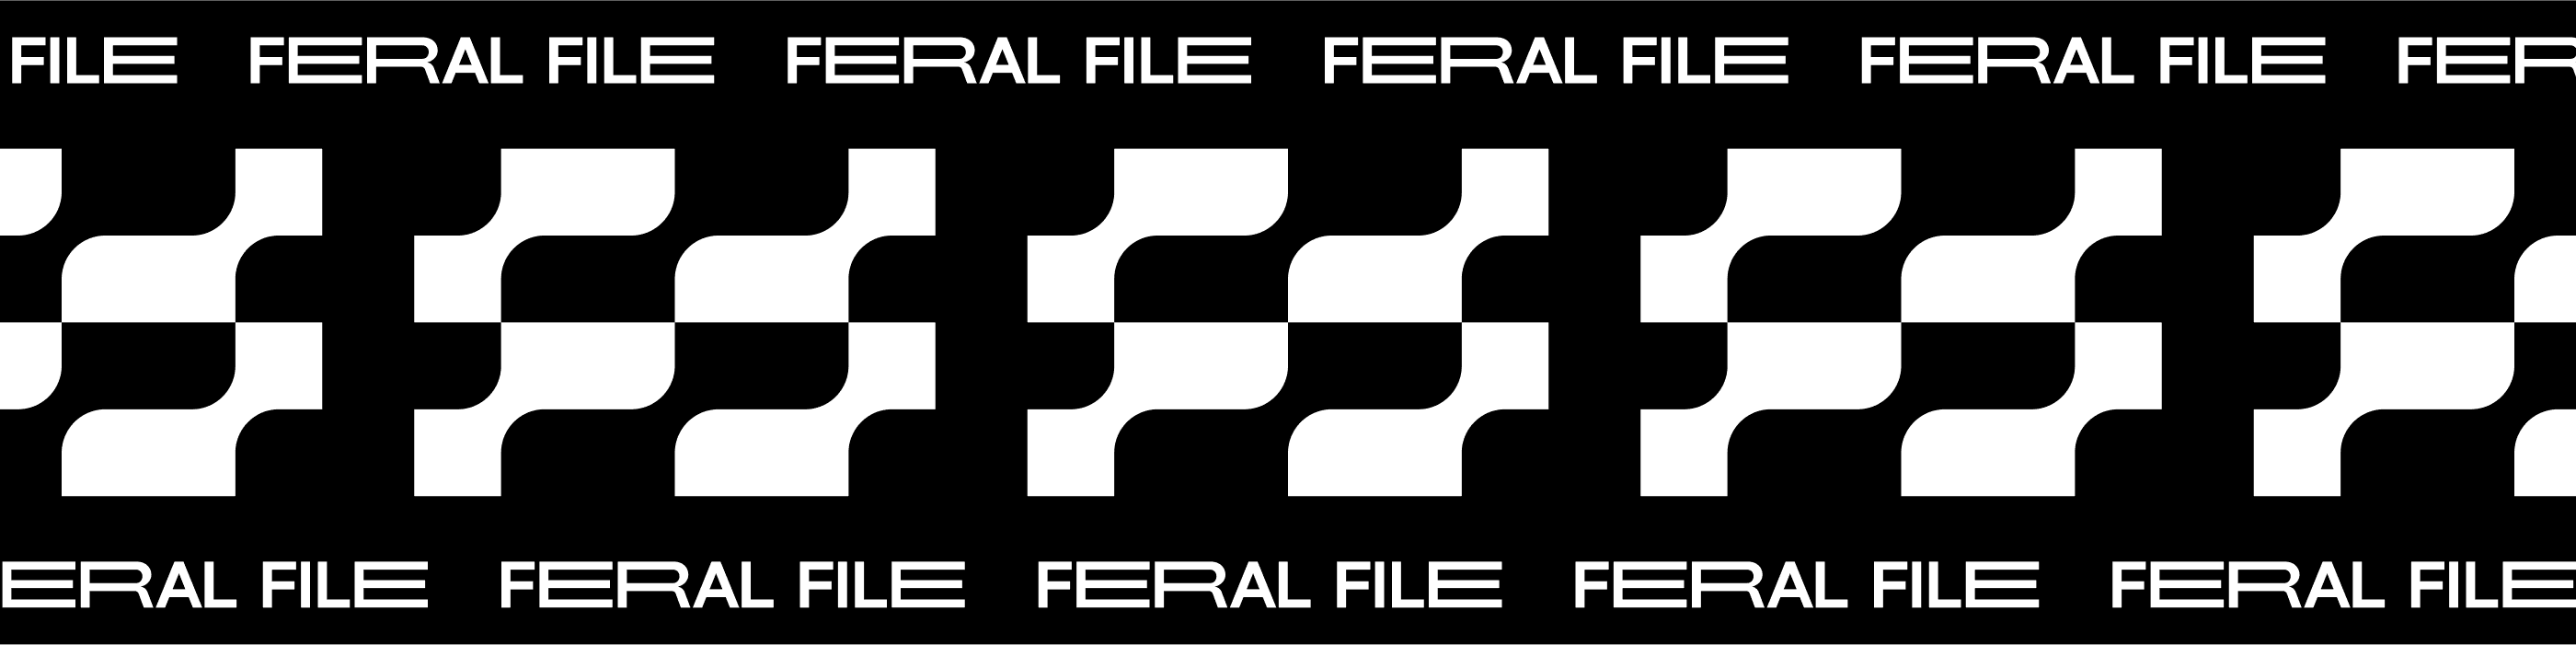 FeralFile bannière